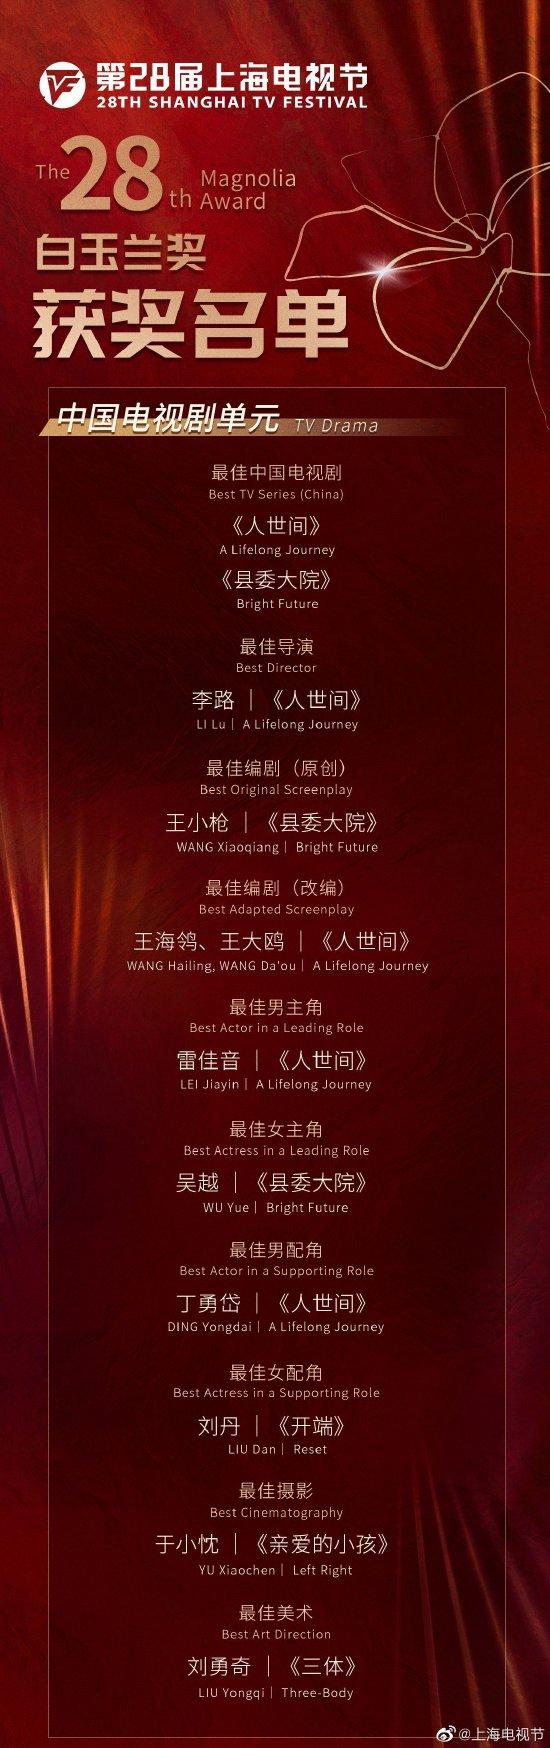 第28届上海电视节白玉兰奖获奖名单